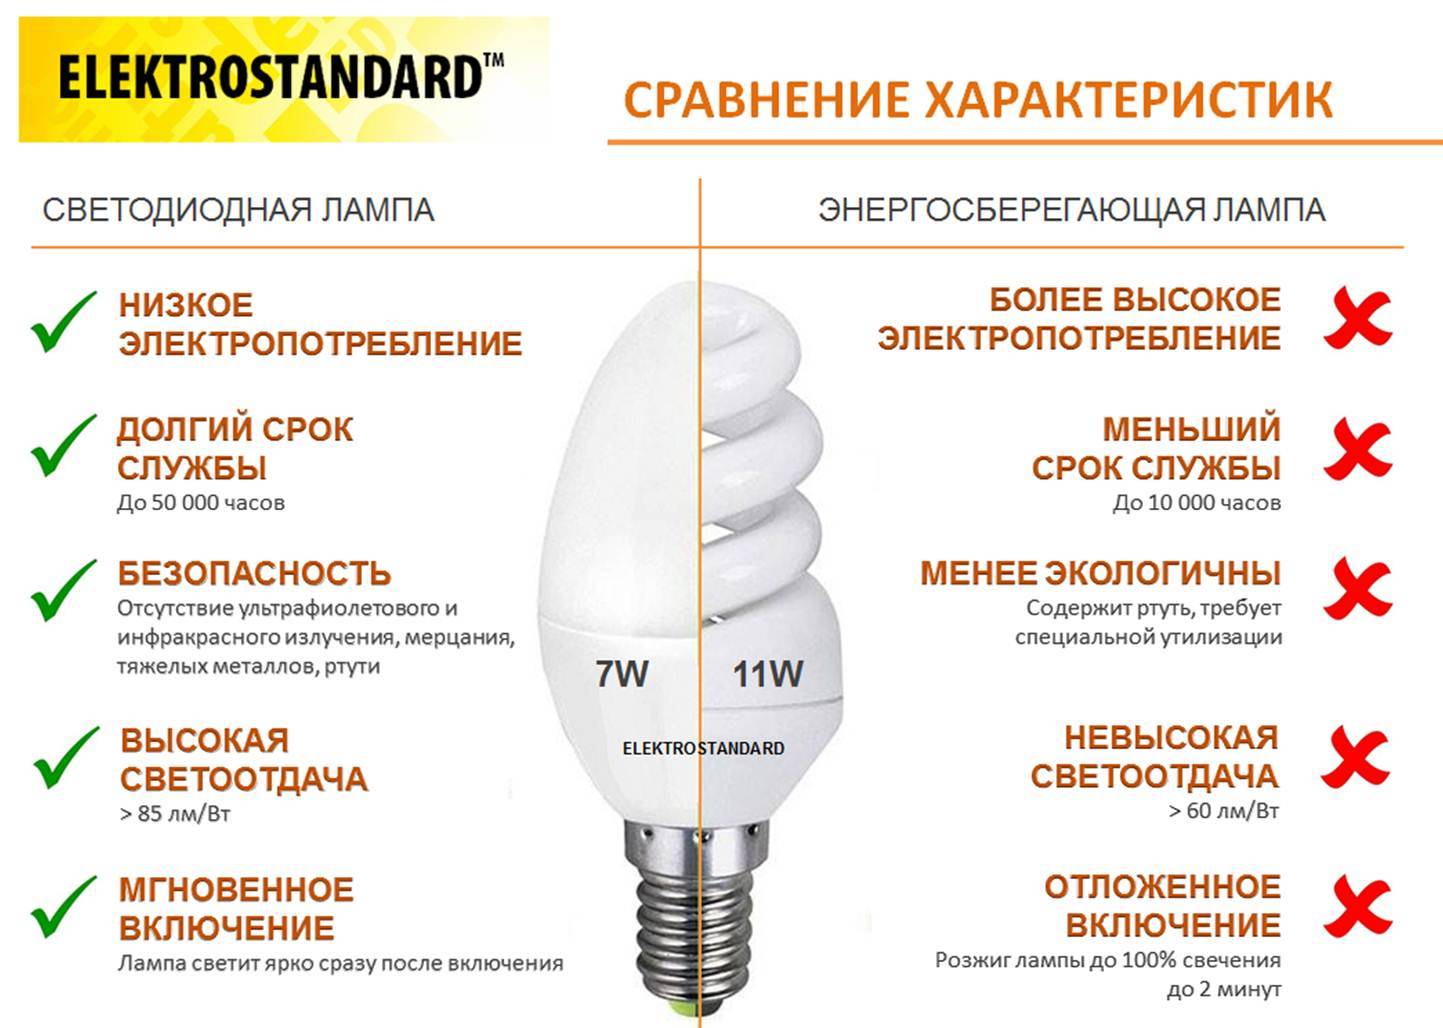 Светодиодные лампы экономят электроэнергию или нет?